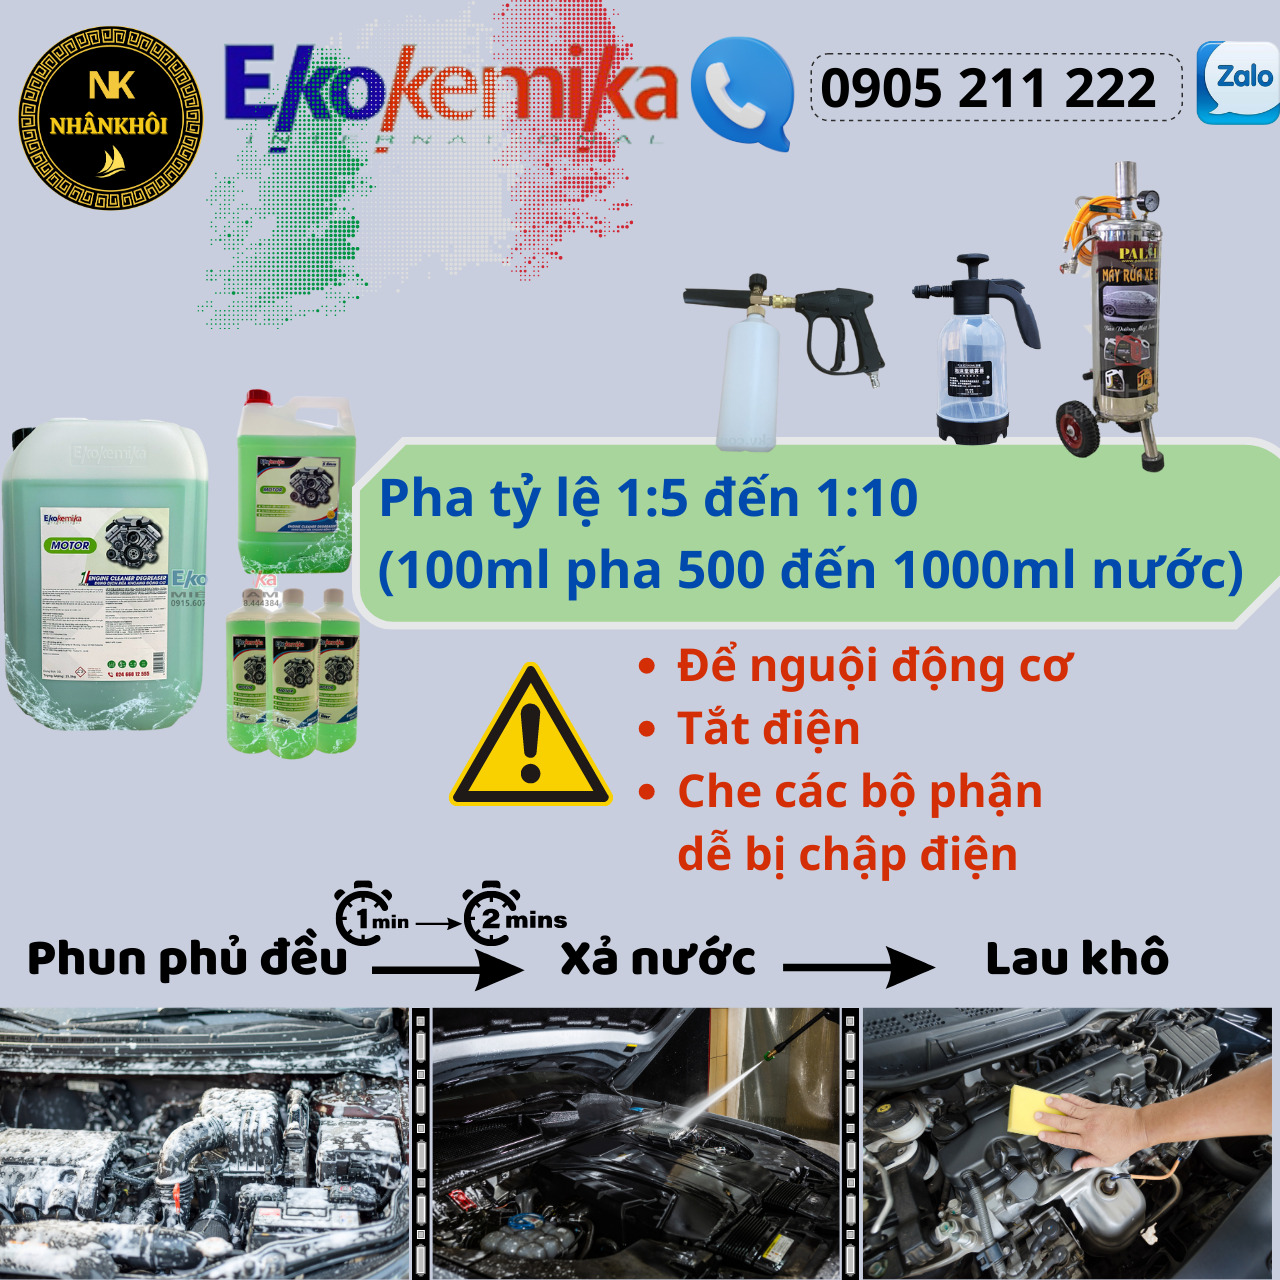 Motor - 1 lít - Dung dịch rửa khoang động cơ, khoang máy - Làm sạch dầu mỡ - Ekokemika